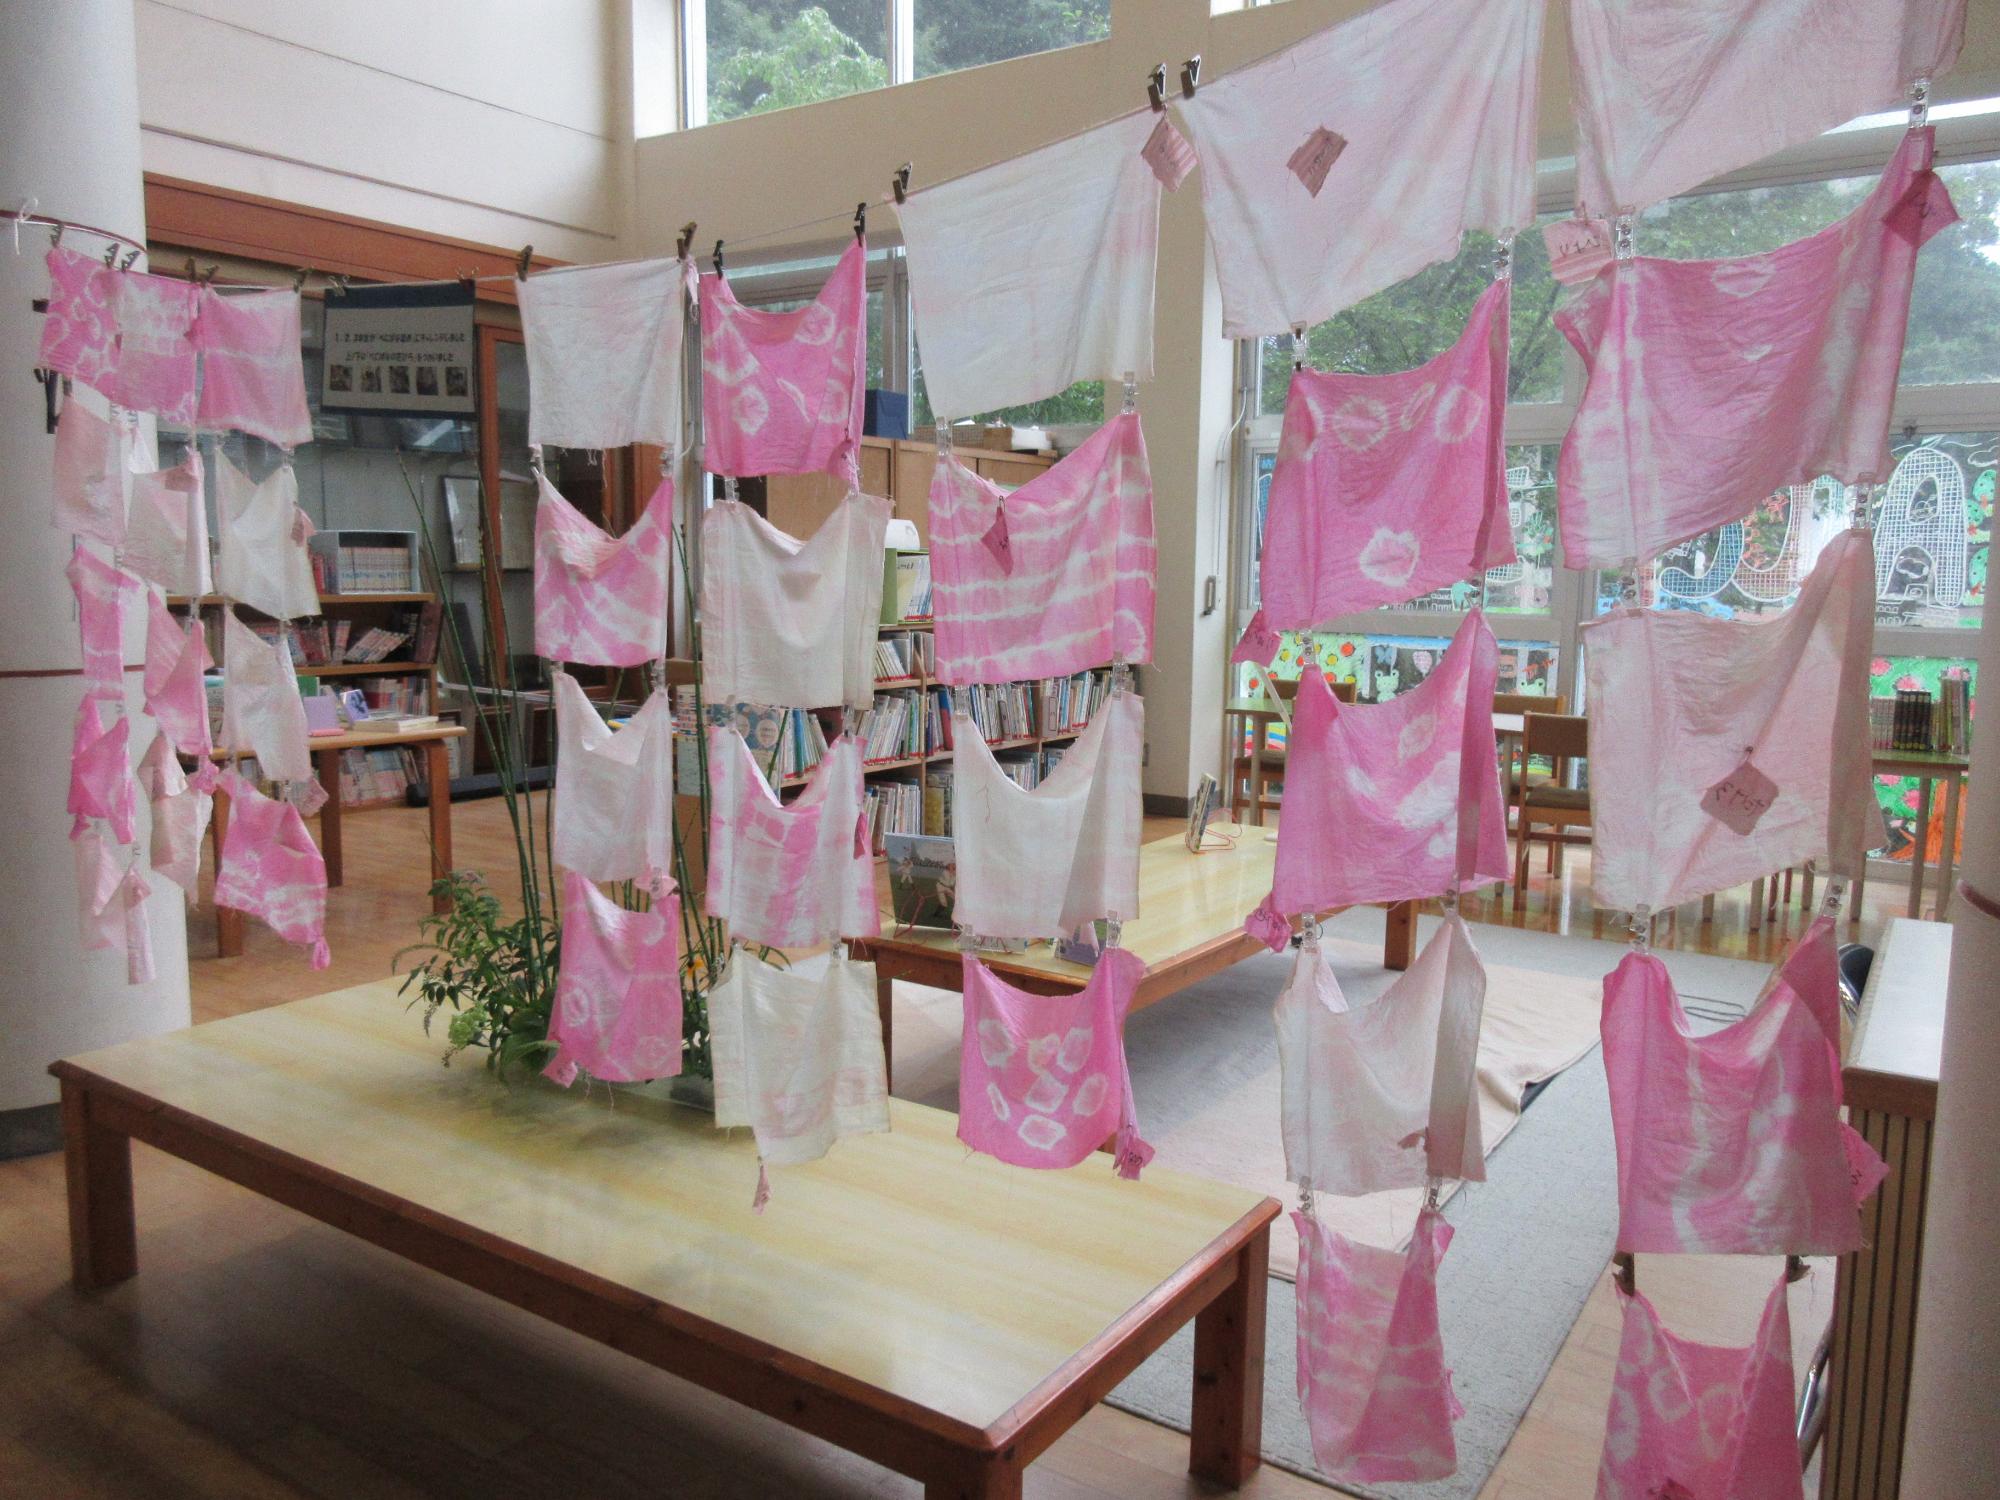 様々な模様のベニバナで染めた布が教室内で壁上に干された写真